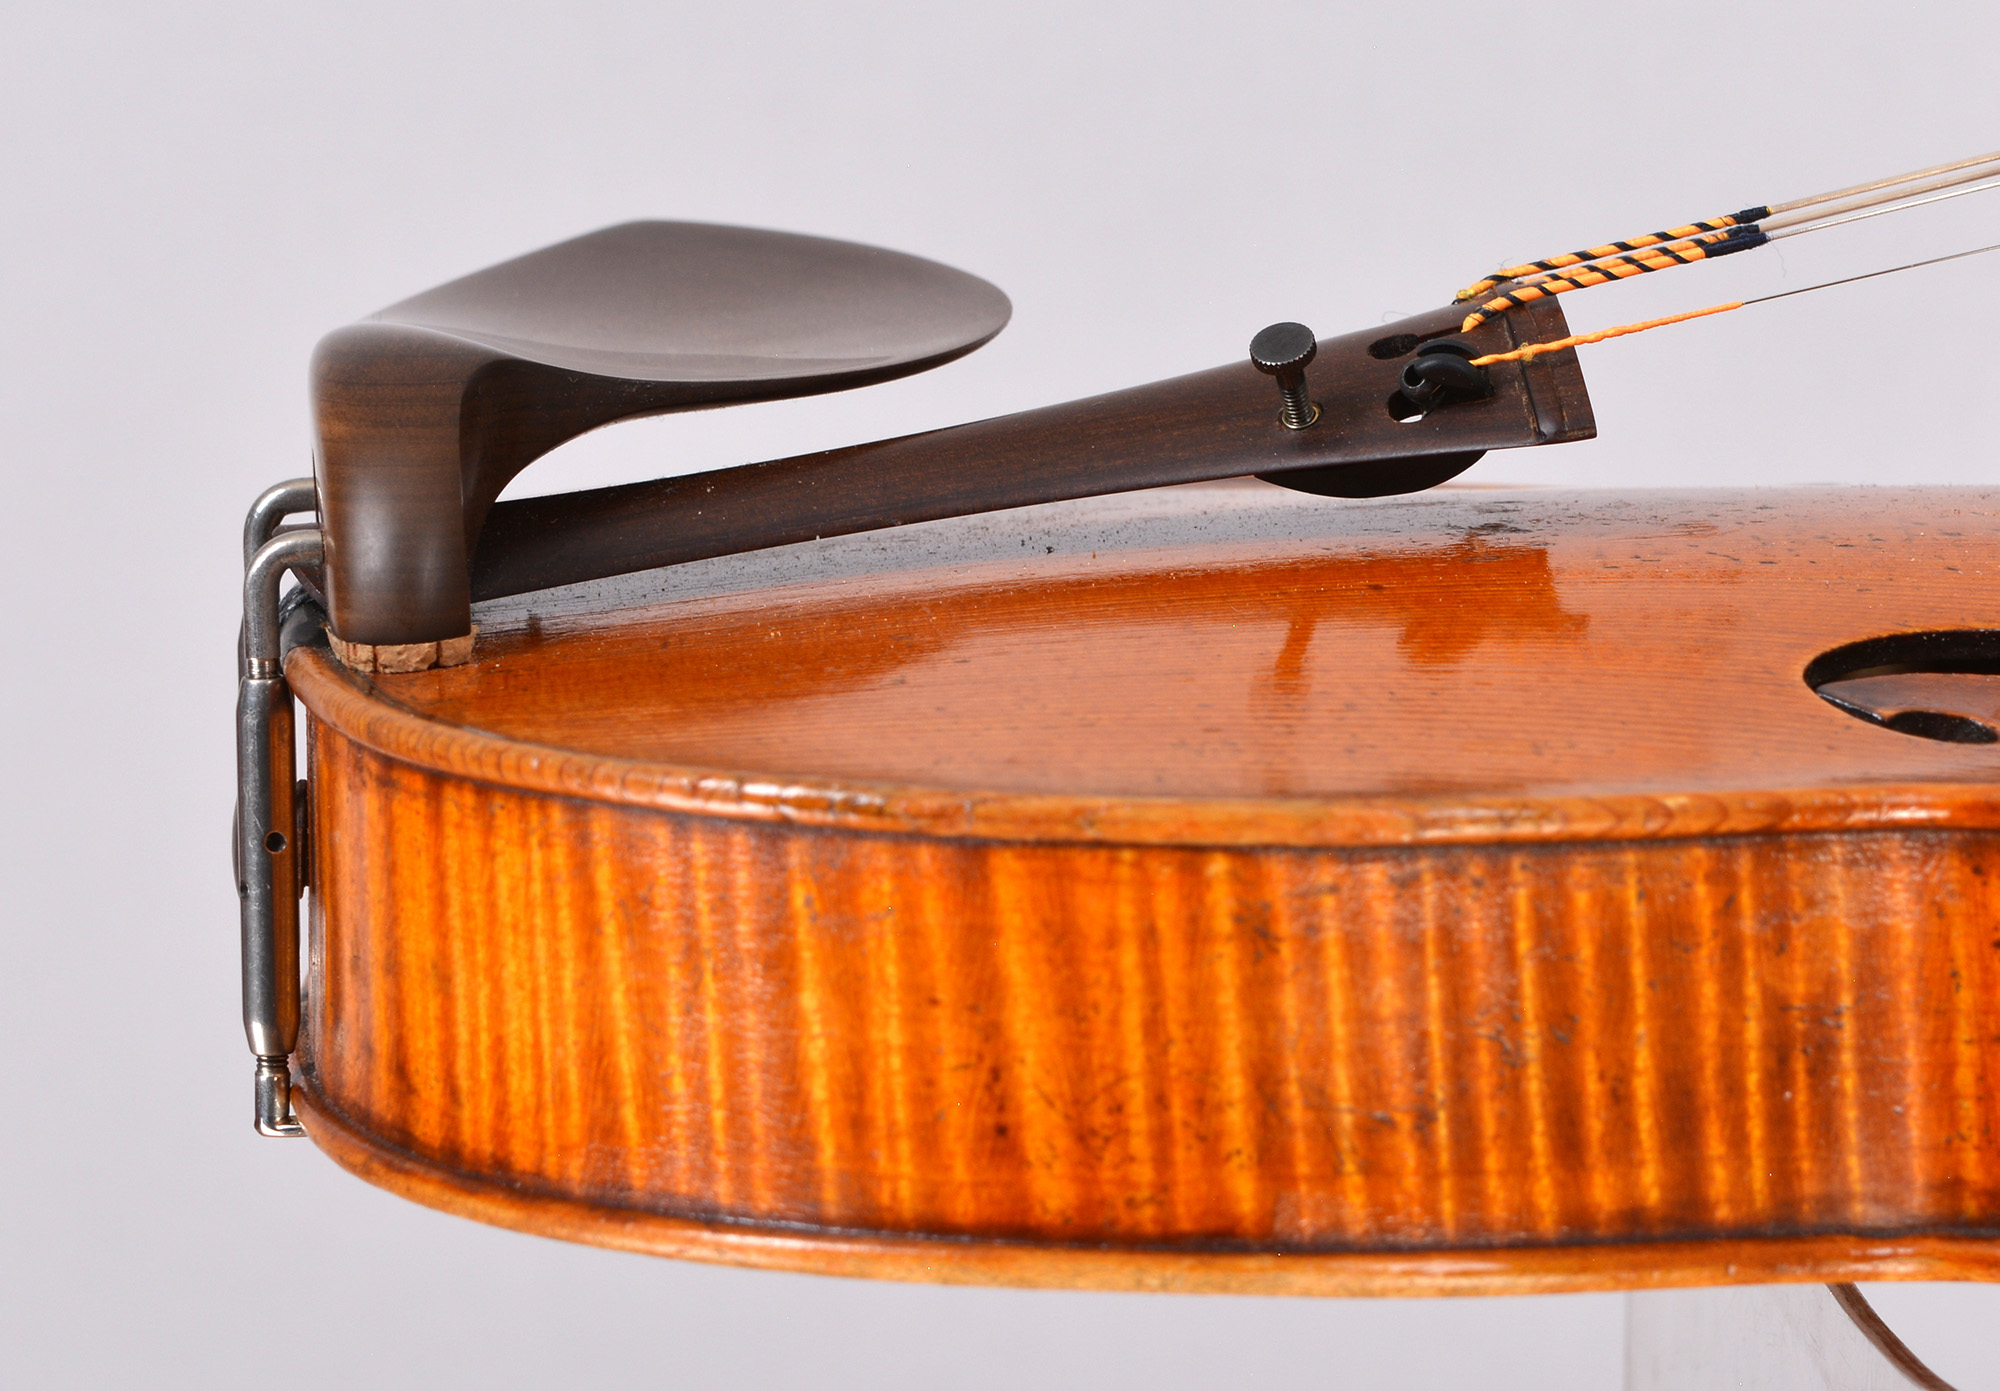 Violin manufactured by Wilhelm Geigenbau